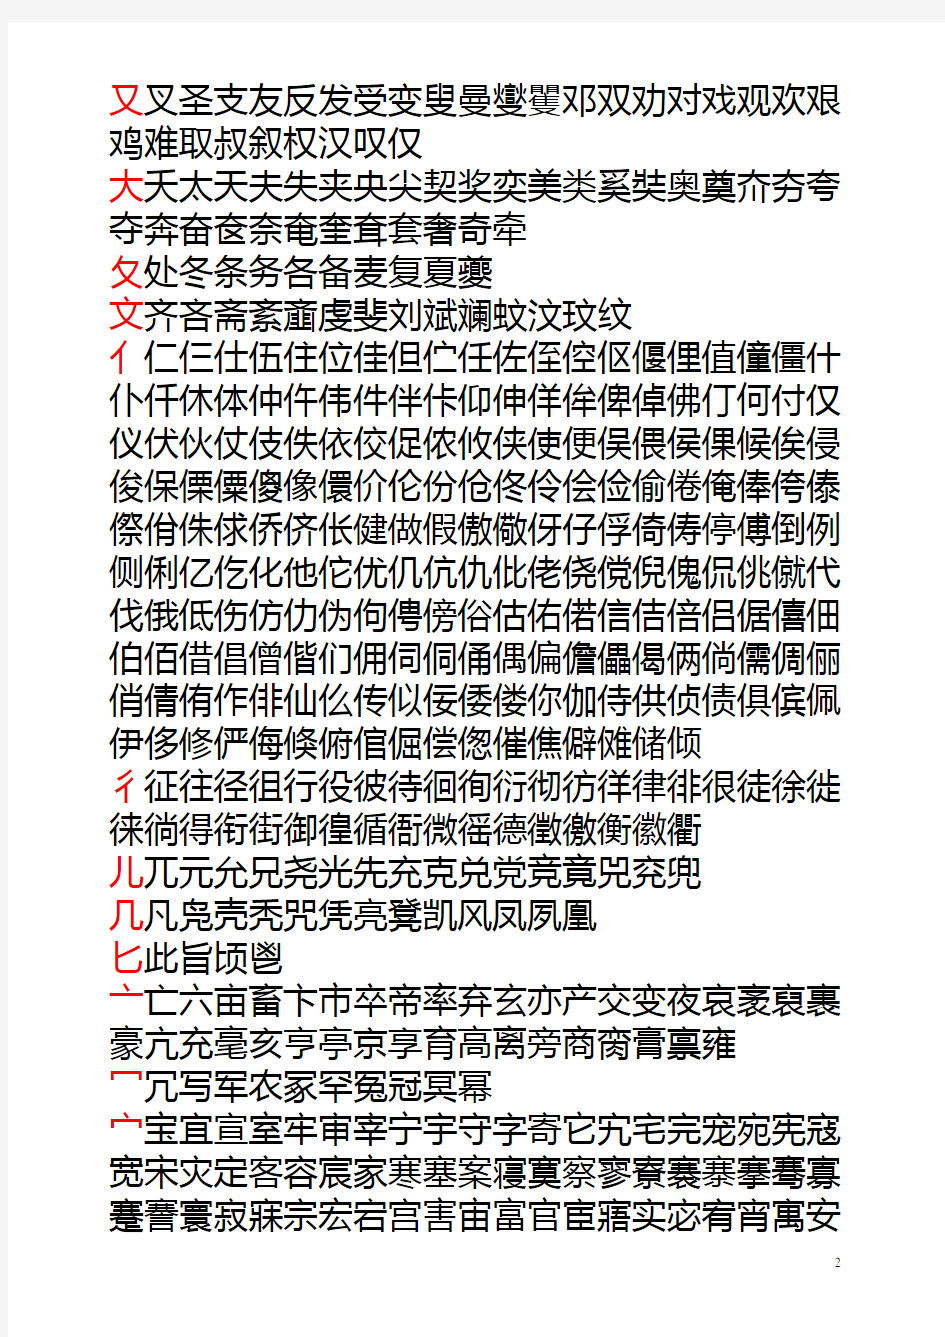 常用汉字偏旁归类表